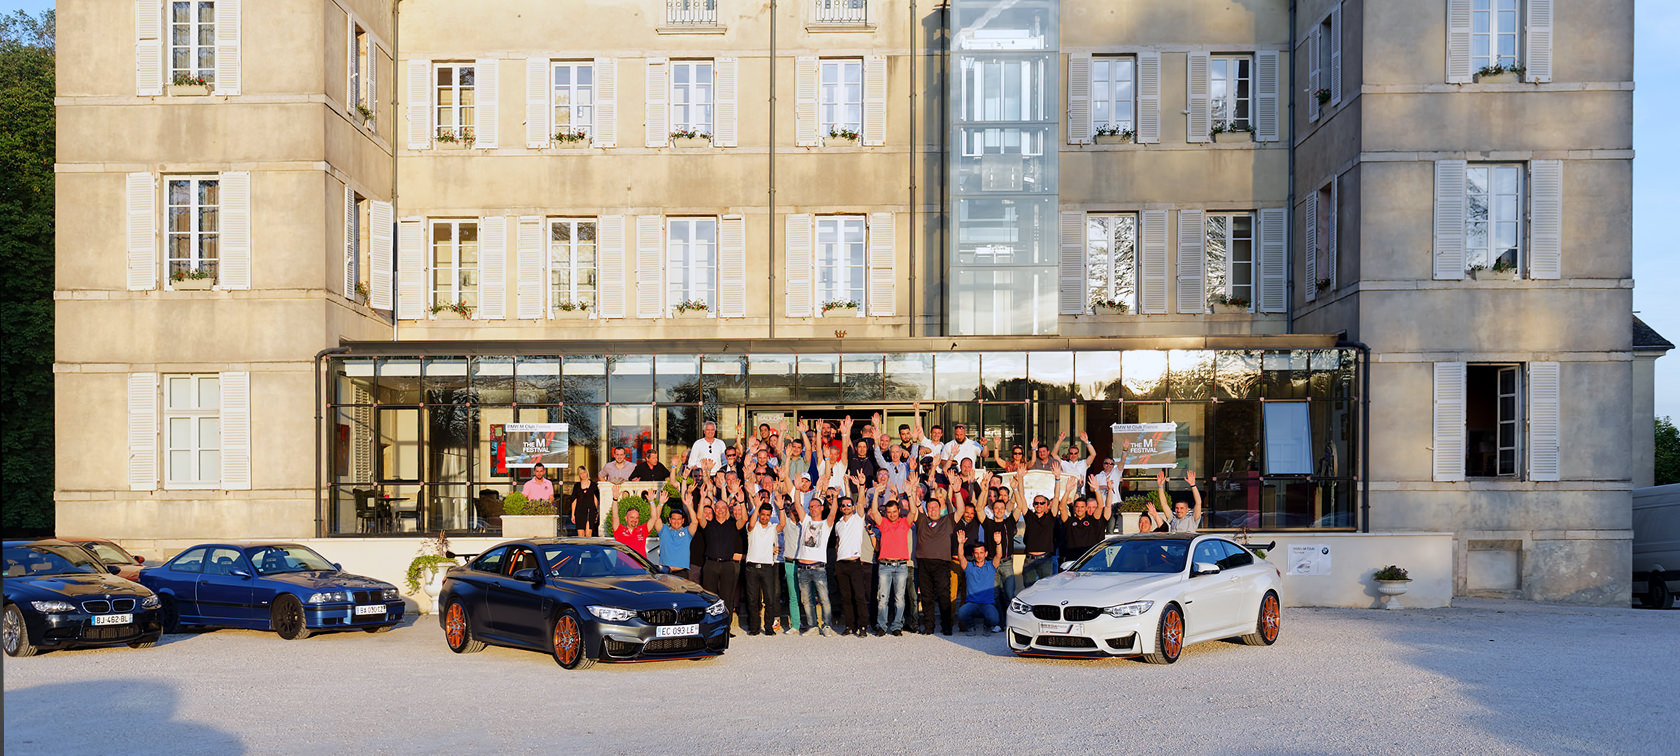 BMW M Club France – La communauté de BMW M : Automobiles BMW M.